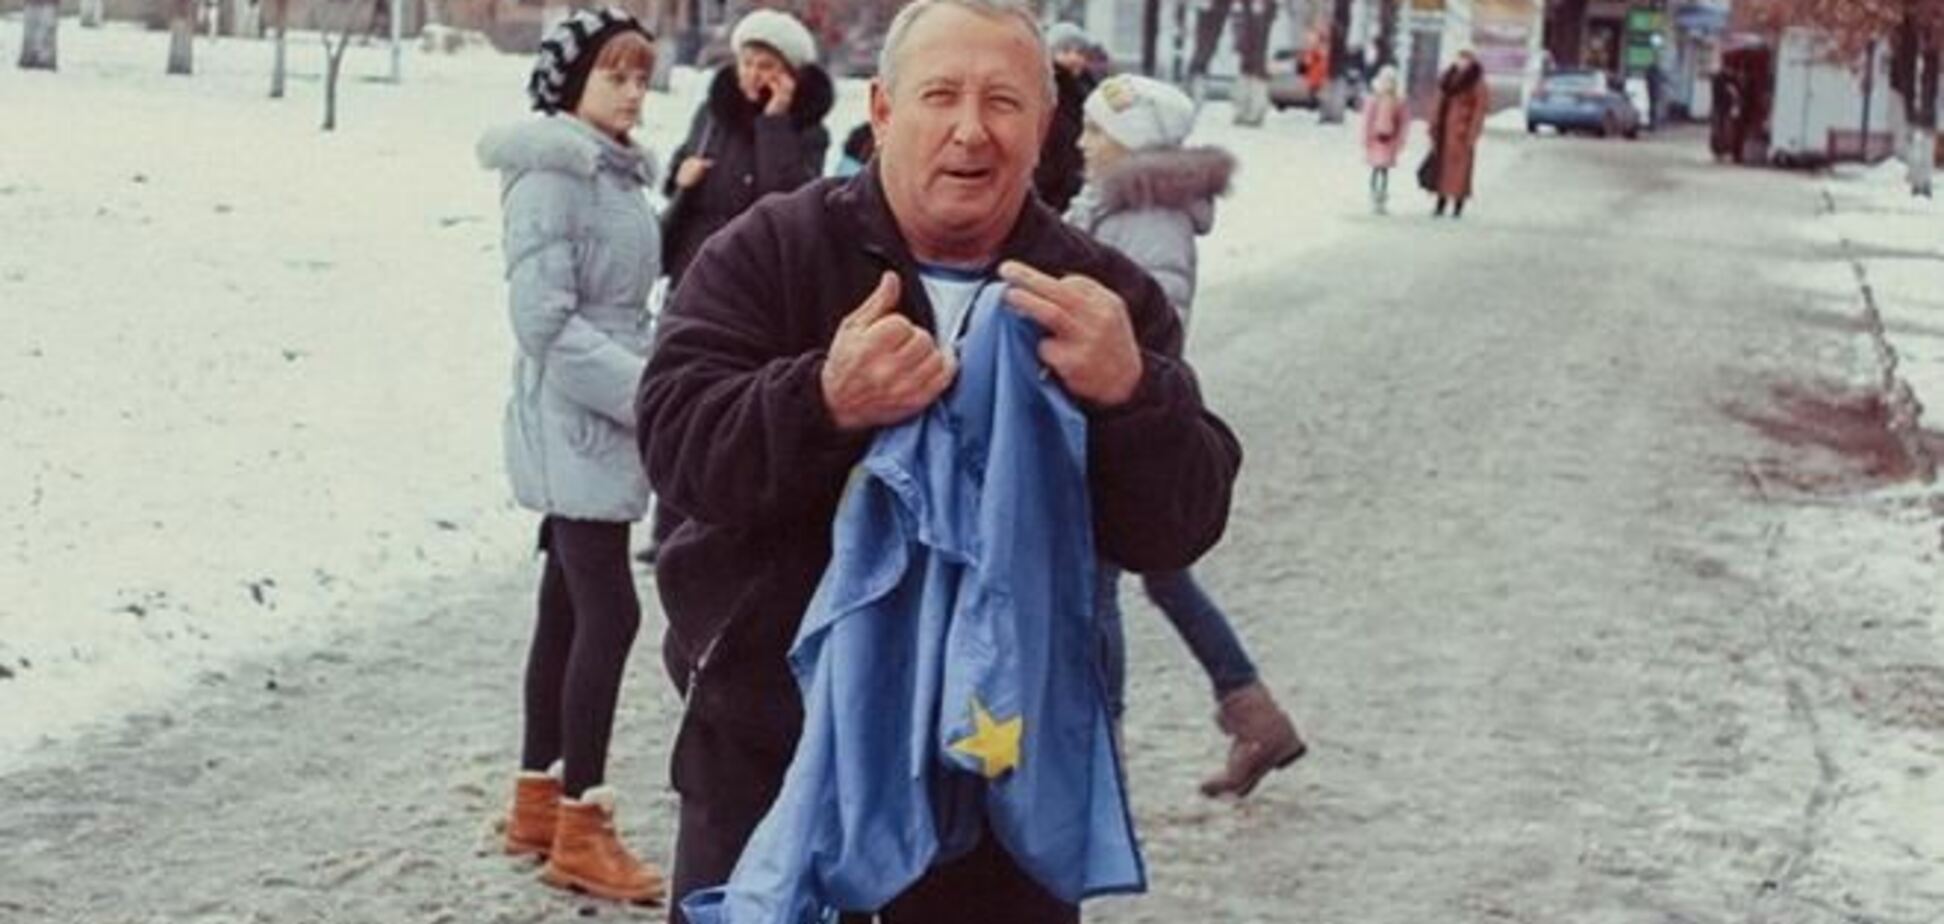 В Славянске антимайдановцы под руководством мэра города сожгли флаг ЕС